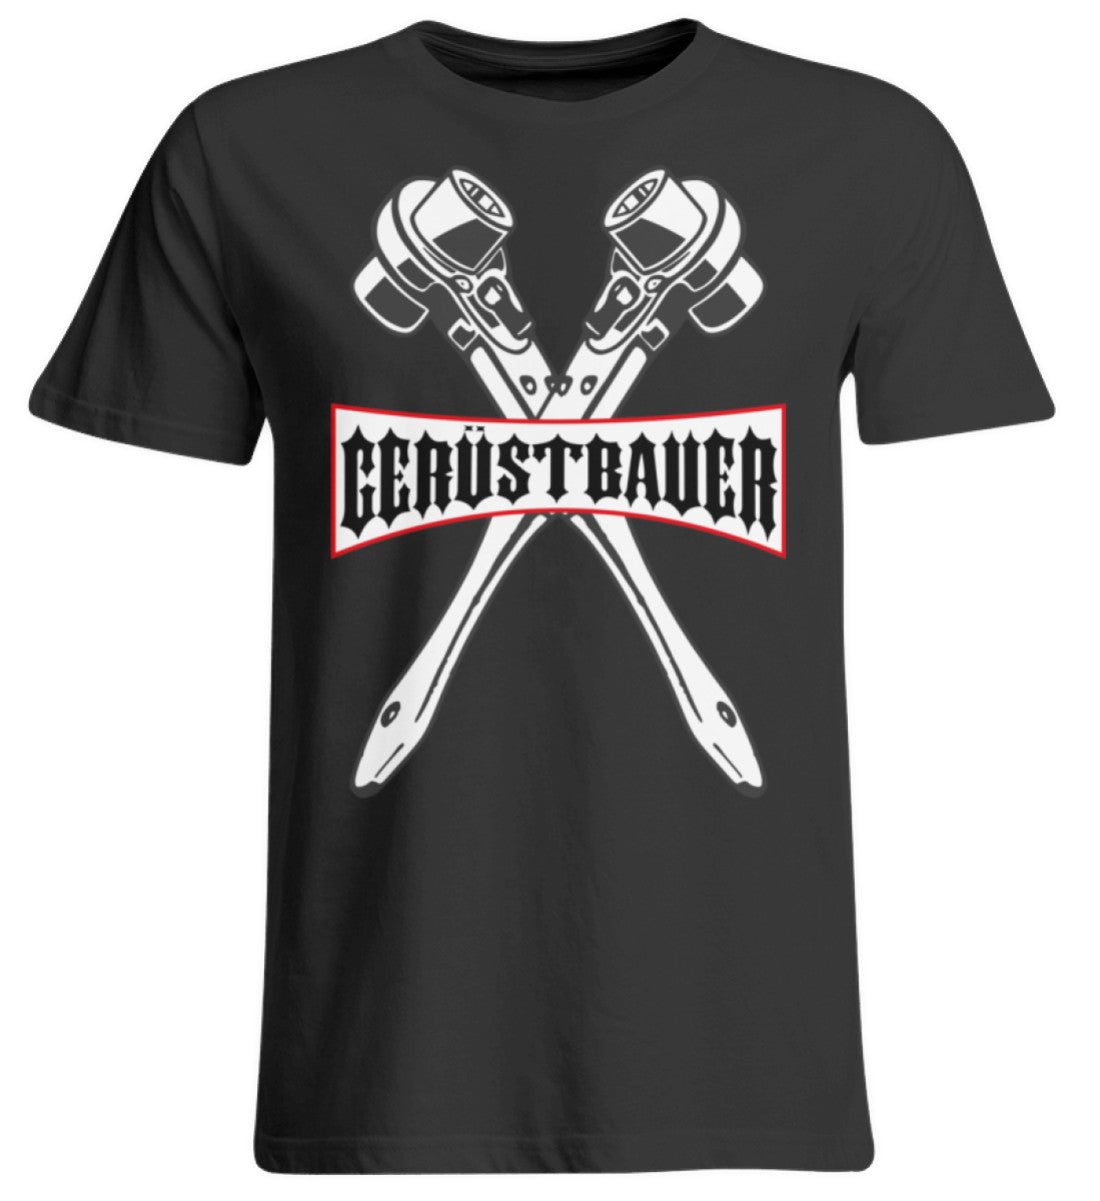 Gerüstbauer - Ratsche €24.95 Gerüstbauer - Shop >>